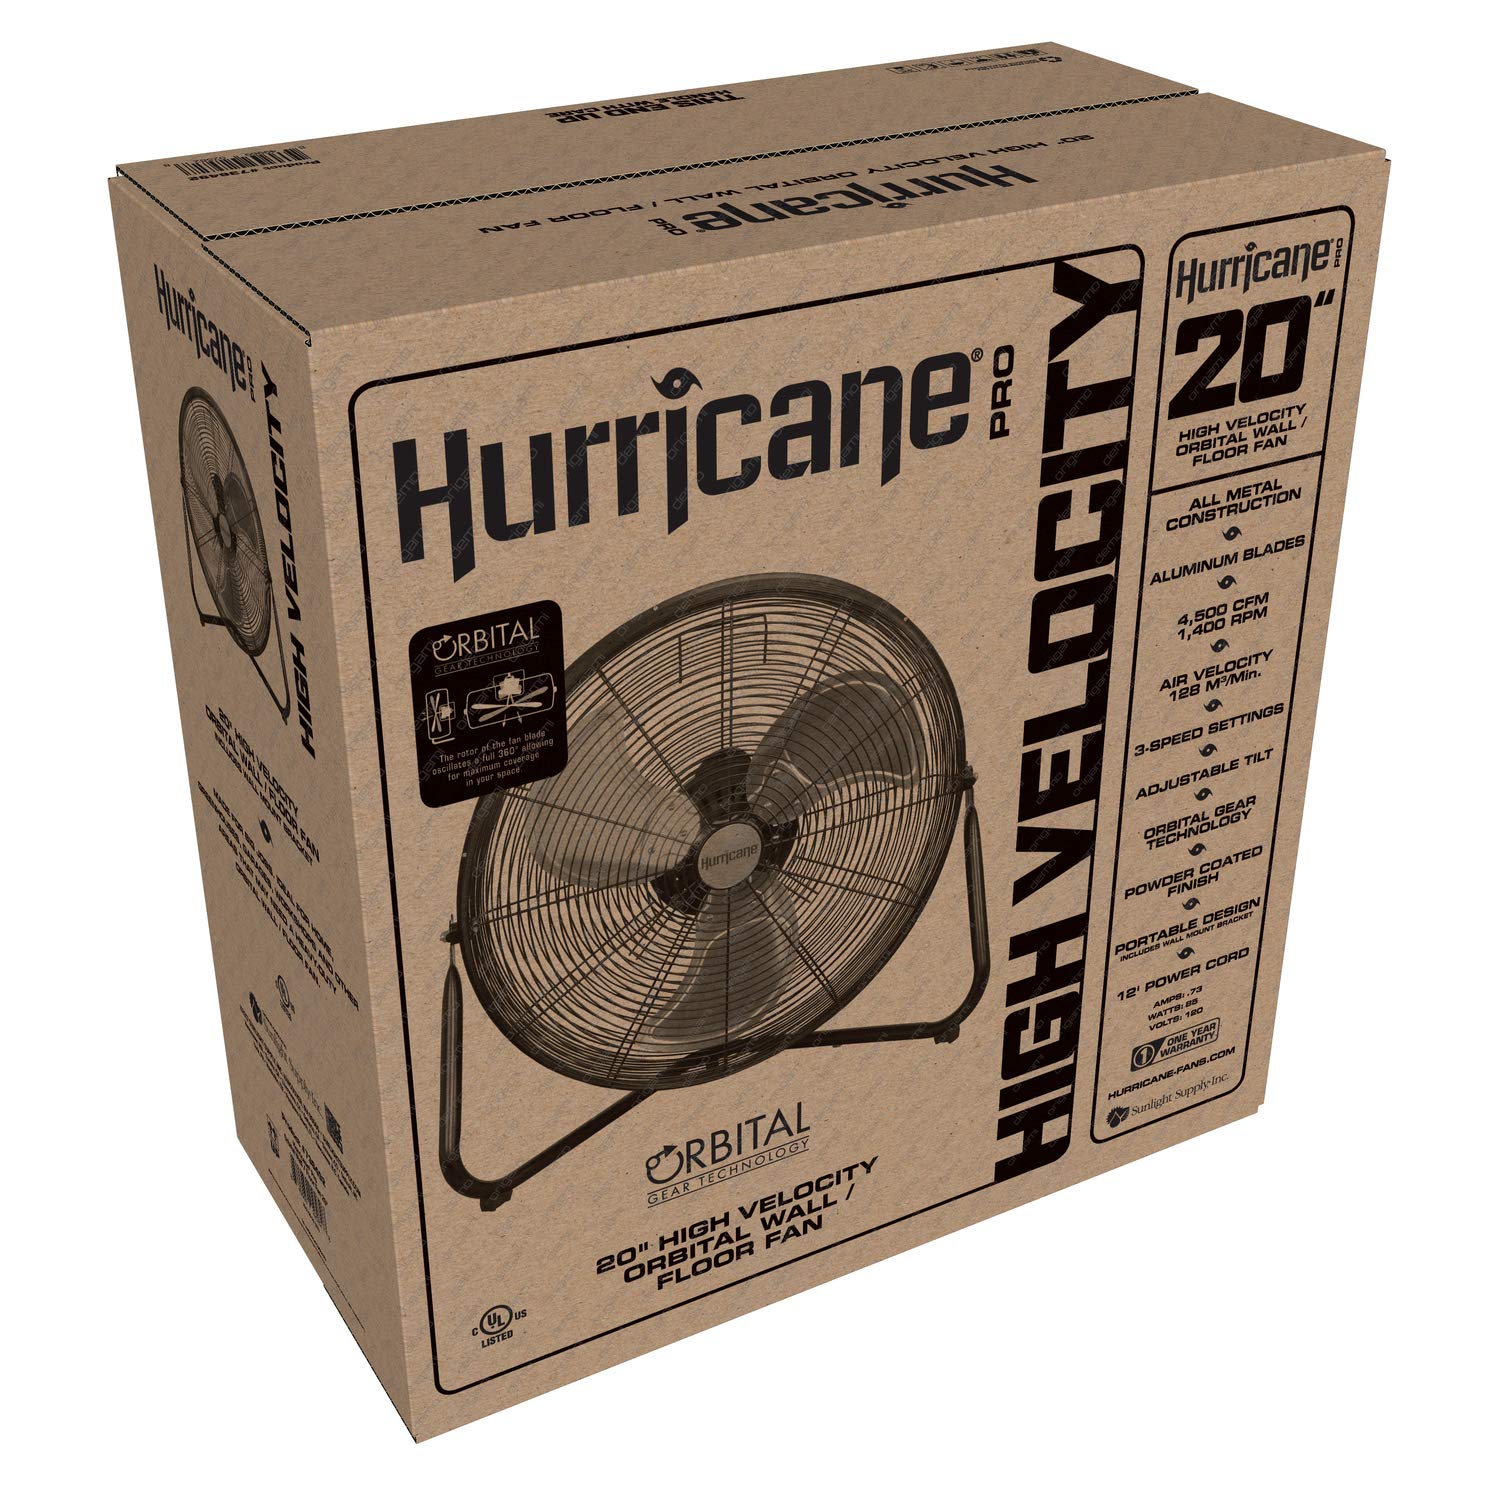 Hurricane® Pro Heavy Duty Orbital Floor Fan 20" - HGC736492